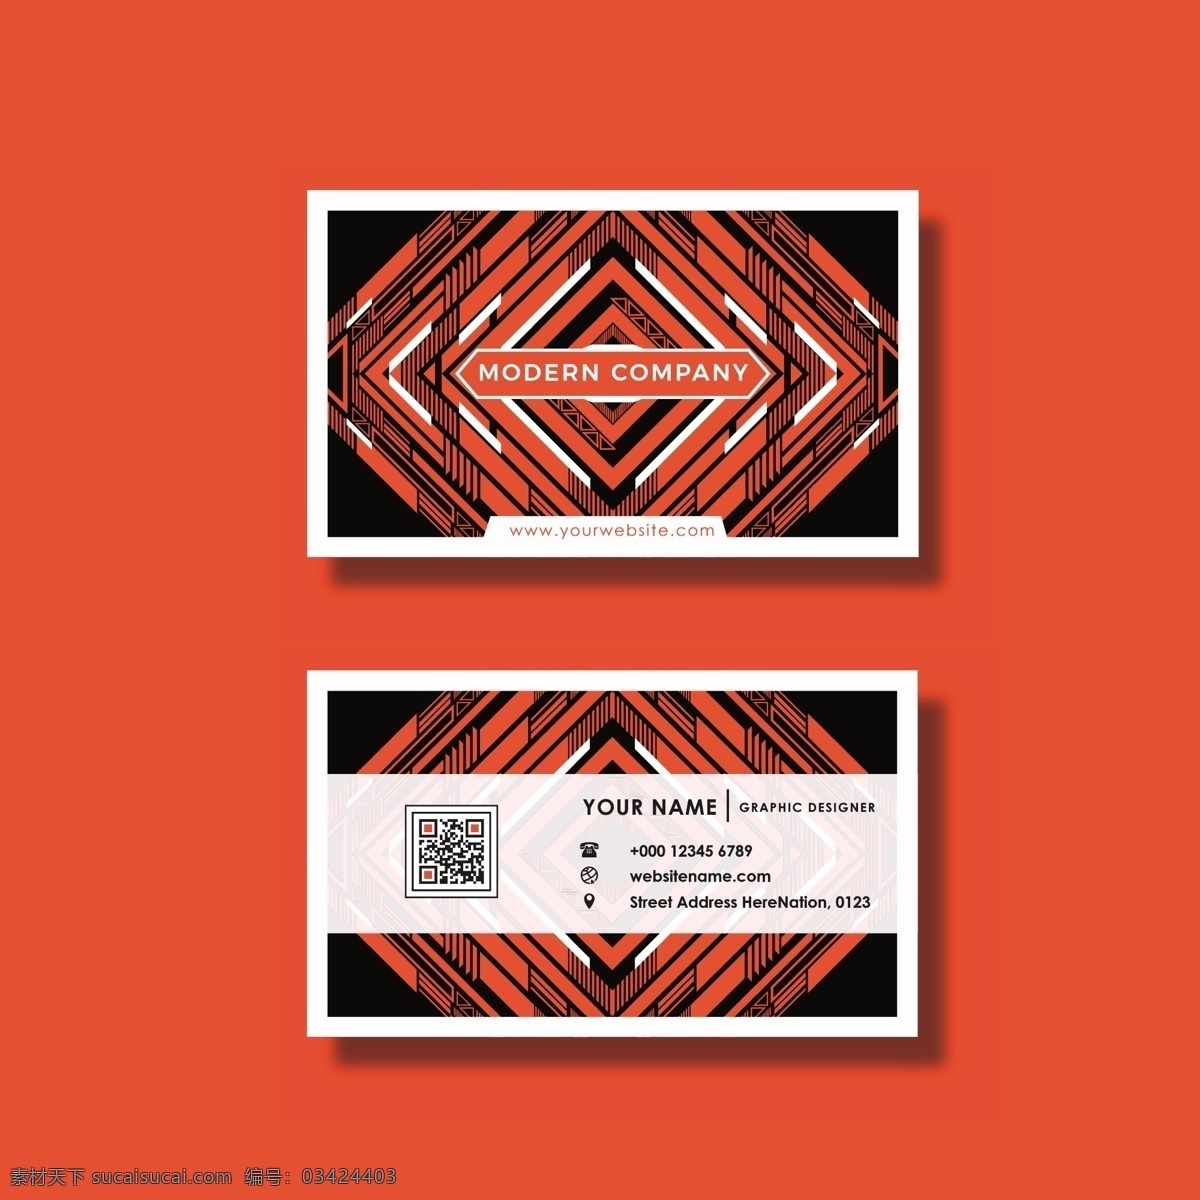 橙色名片设计 商标 名片 商务 抽象 卡片 模板 办公室 橙色 展示 文具 公司 抽象标志 企业标识 品牌 现代 身份